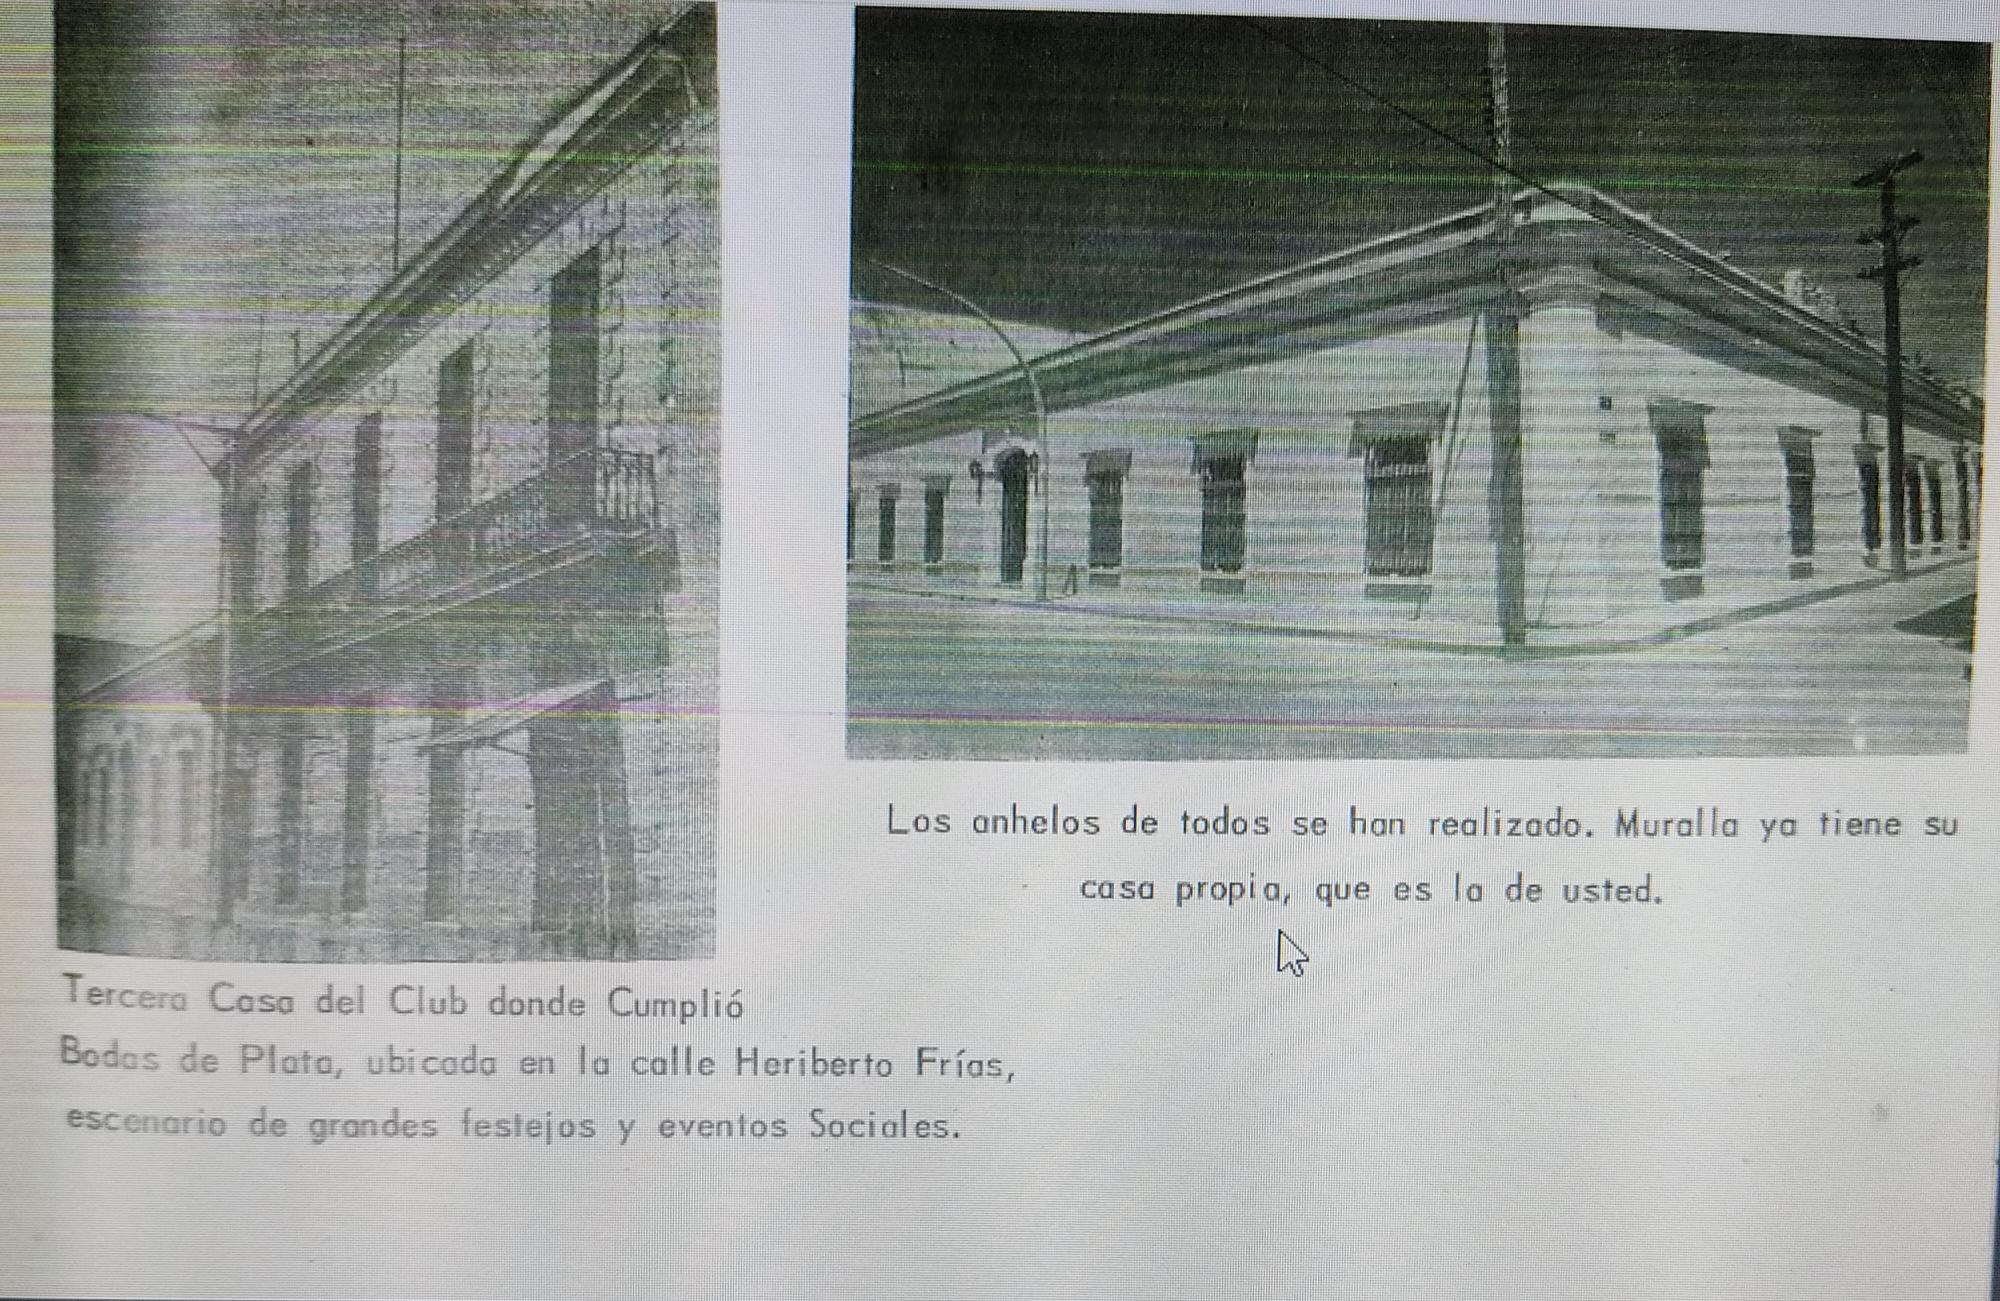 $!Club Muralla, una historia centenaria del deporte ligado a Mazatlán